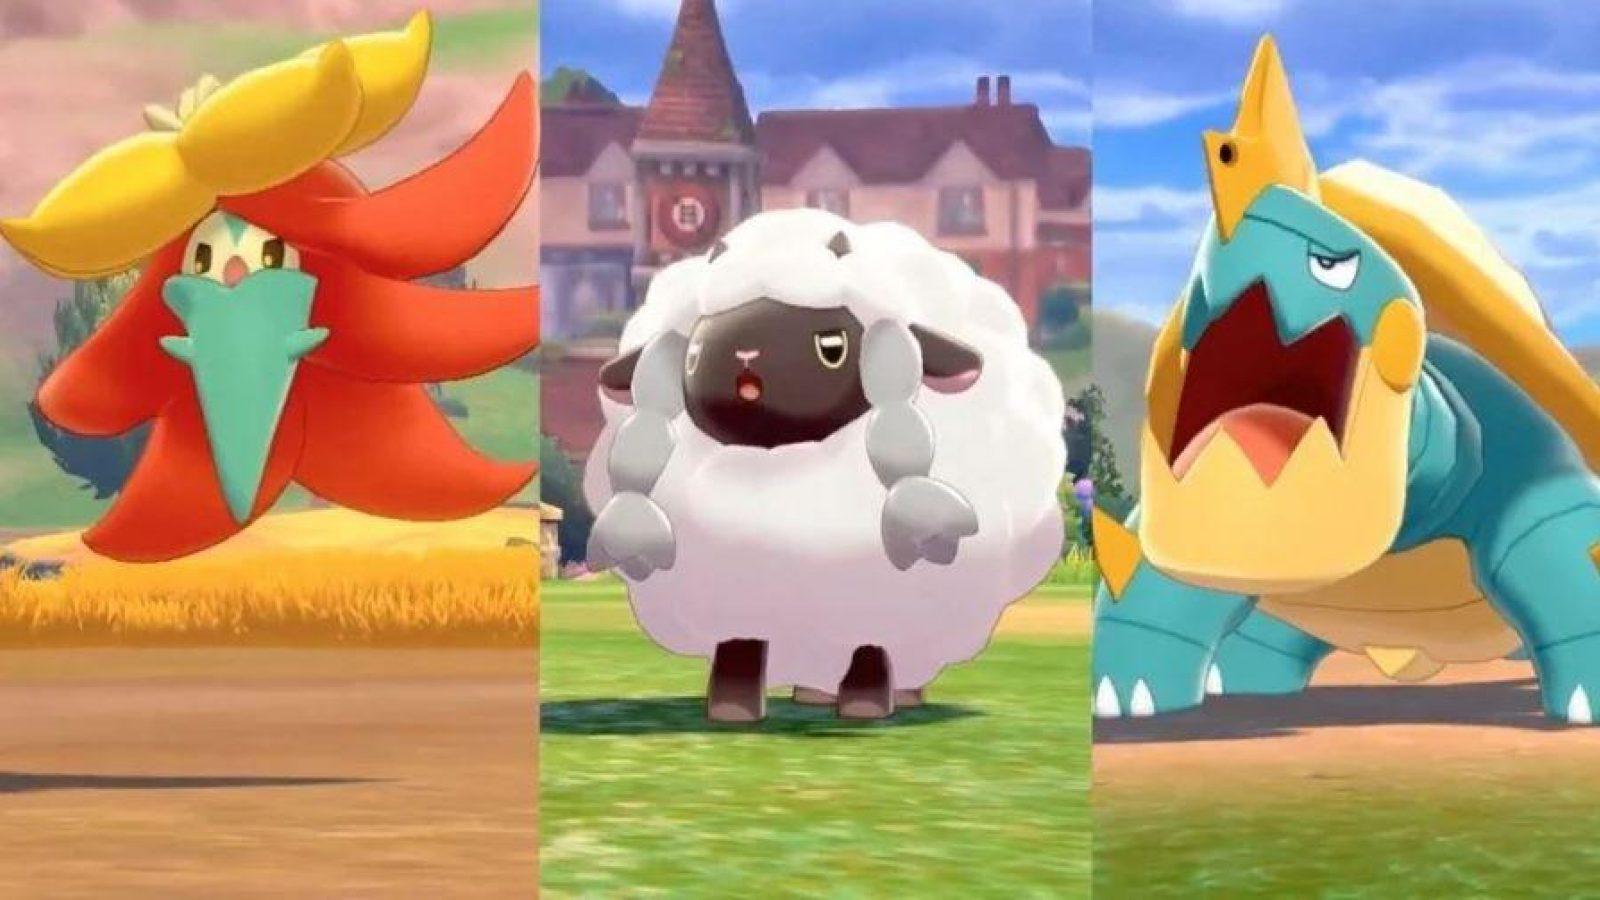 The Wildest New Pokémon in 'Pokémon Sword' and 'Pokémon Shield